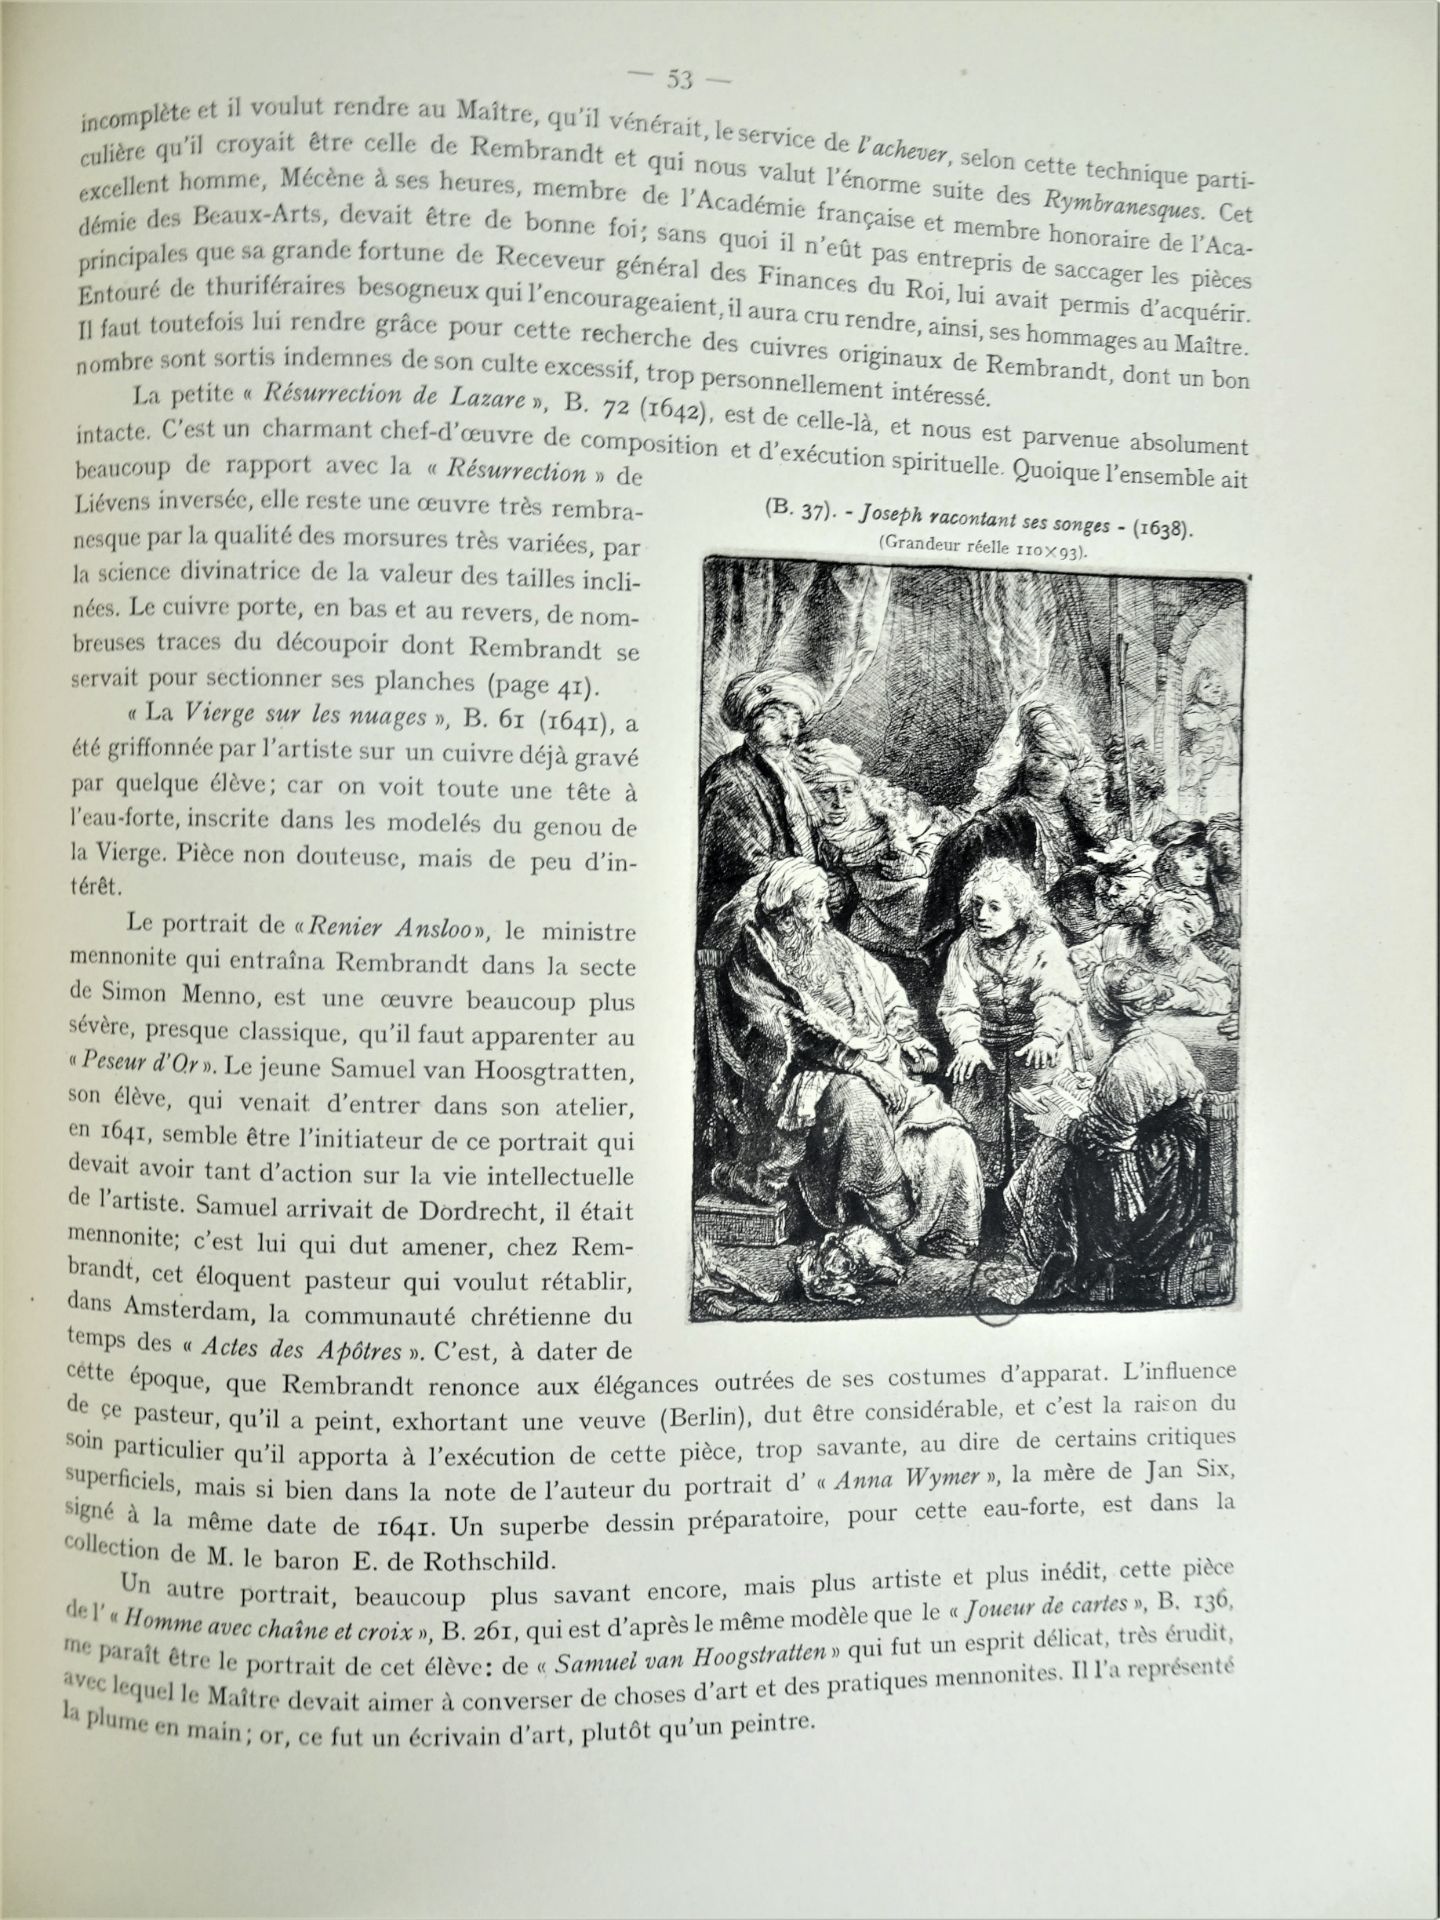 |Art|André Charles Coppier, "Les eaux-fortes de Rembrandt", 1922, limité. Paris, Armand Colin, " - Image 7 of 15